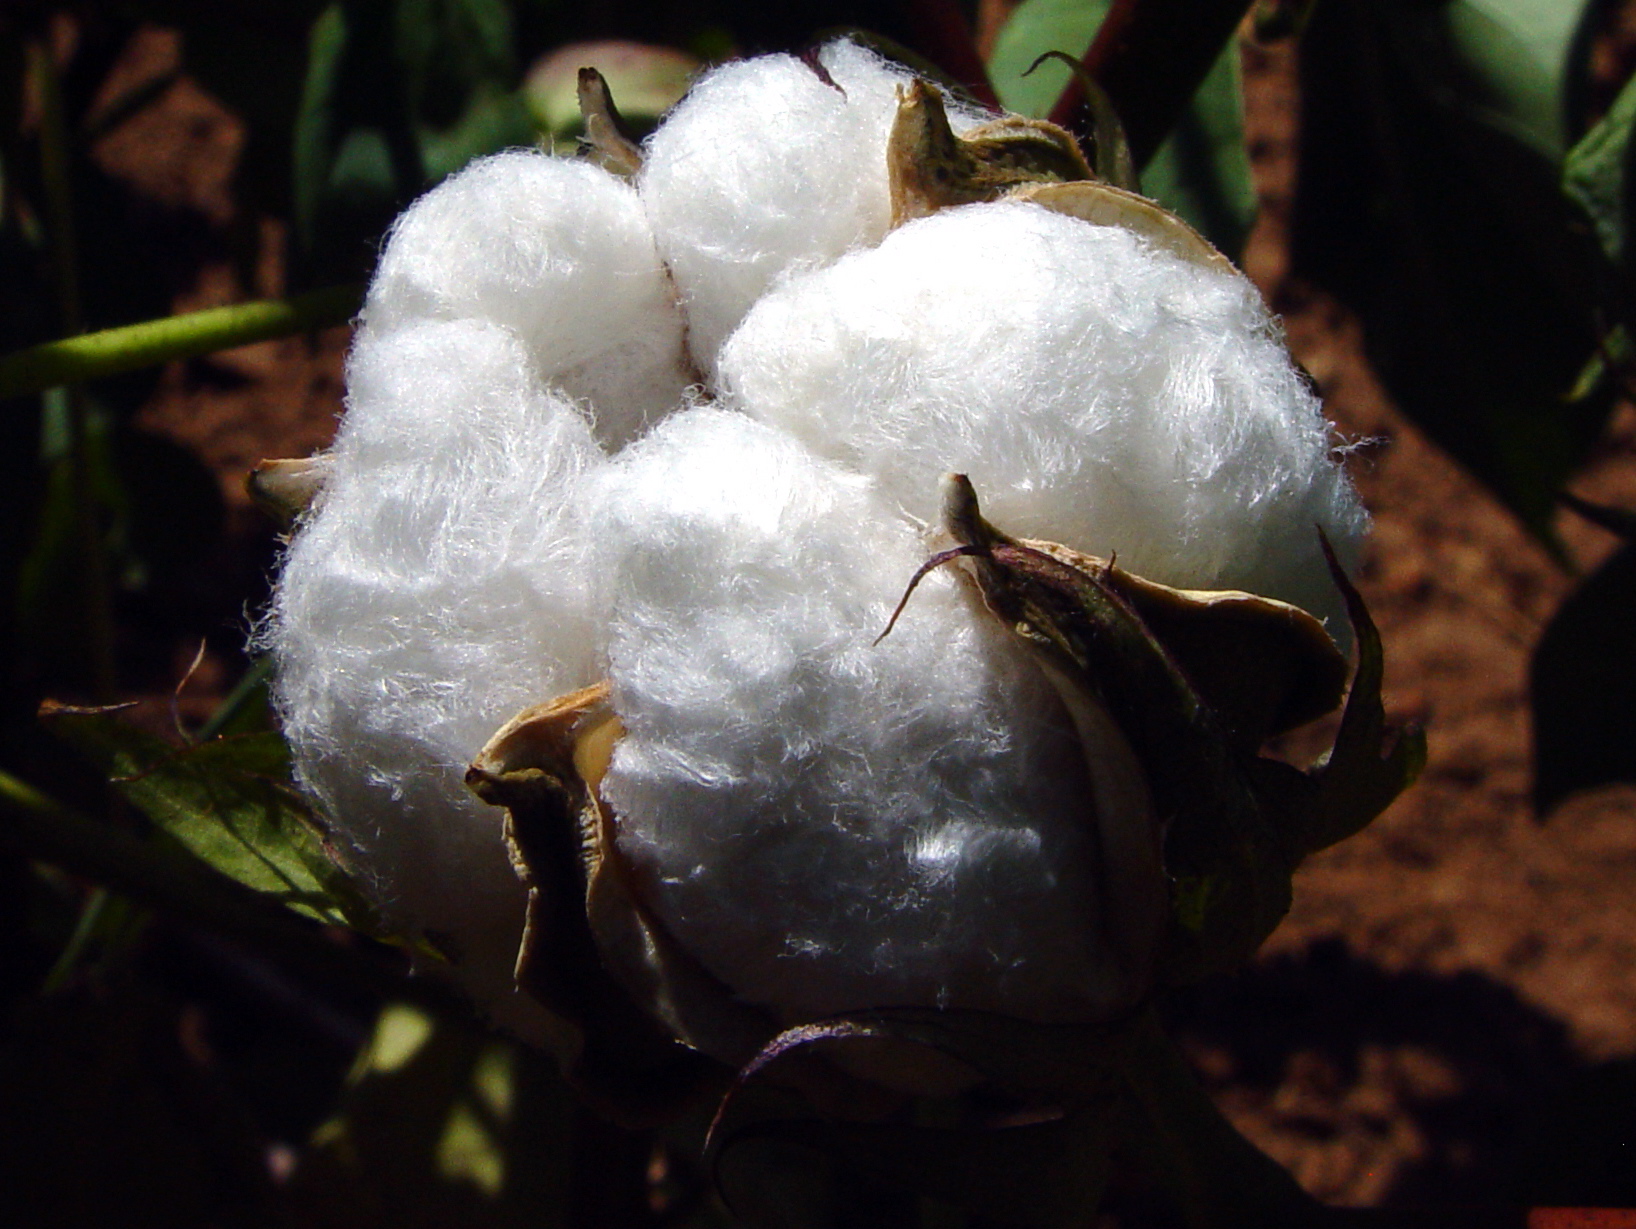  Le Mali se donne les moyens d’atteindre 800 000 tonnes de coton en 2016/17